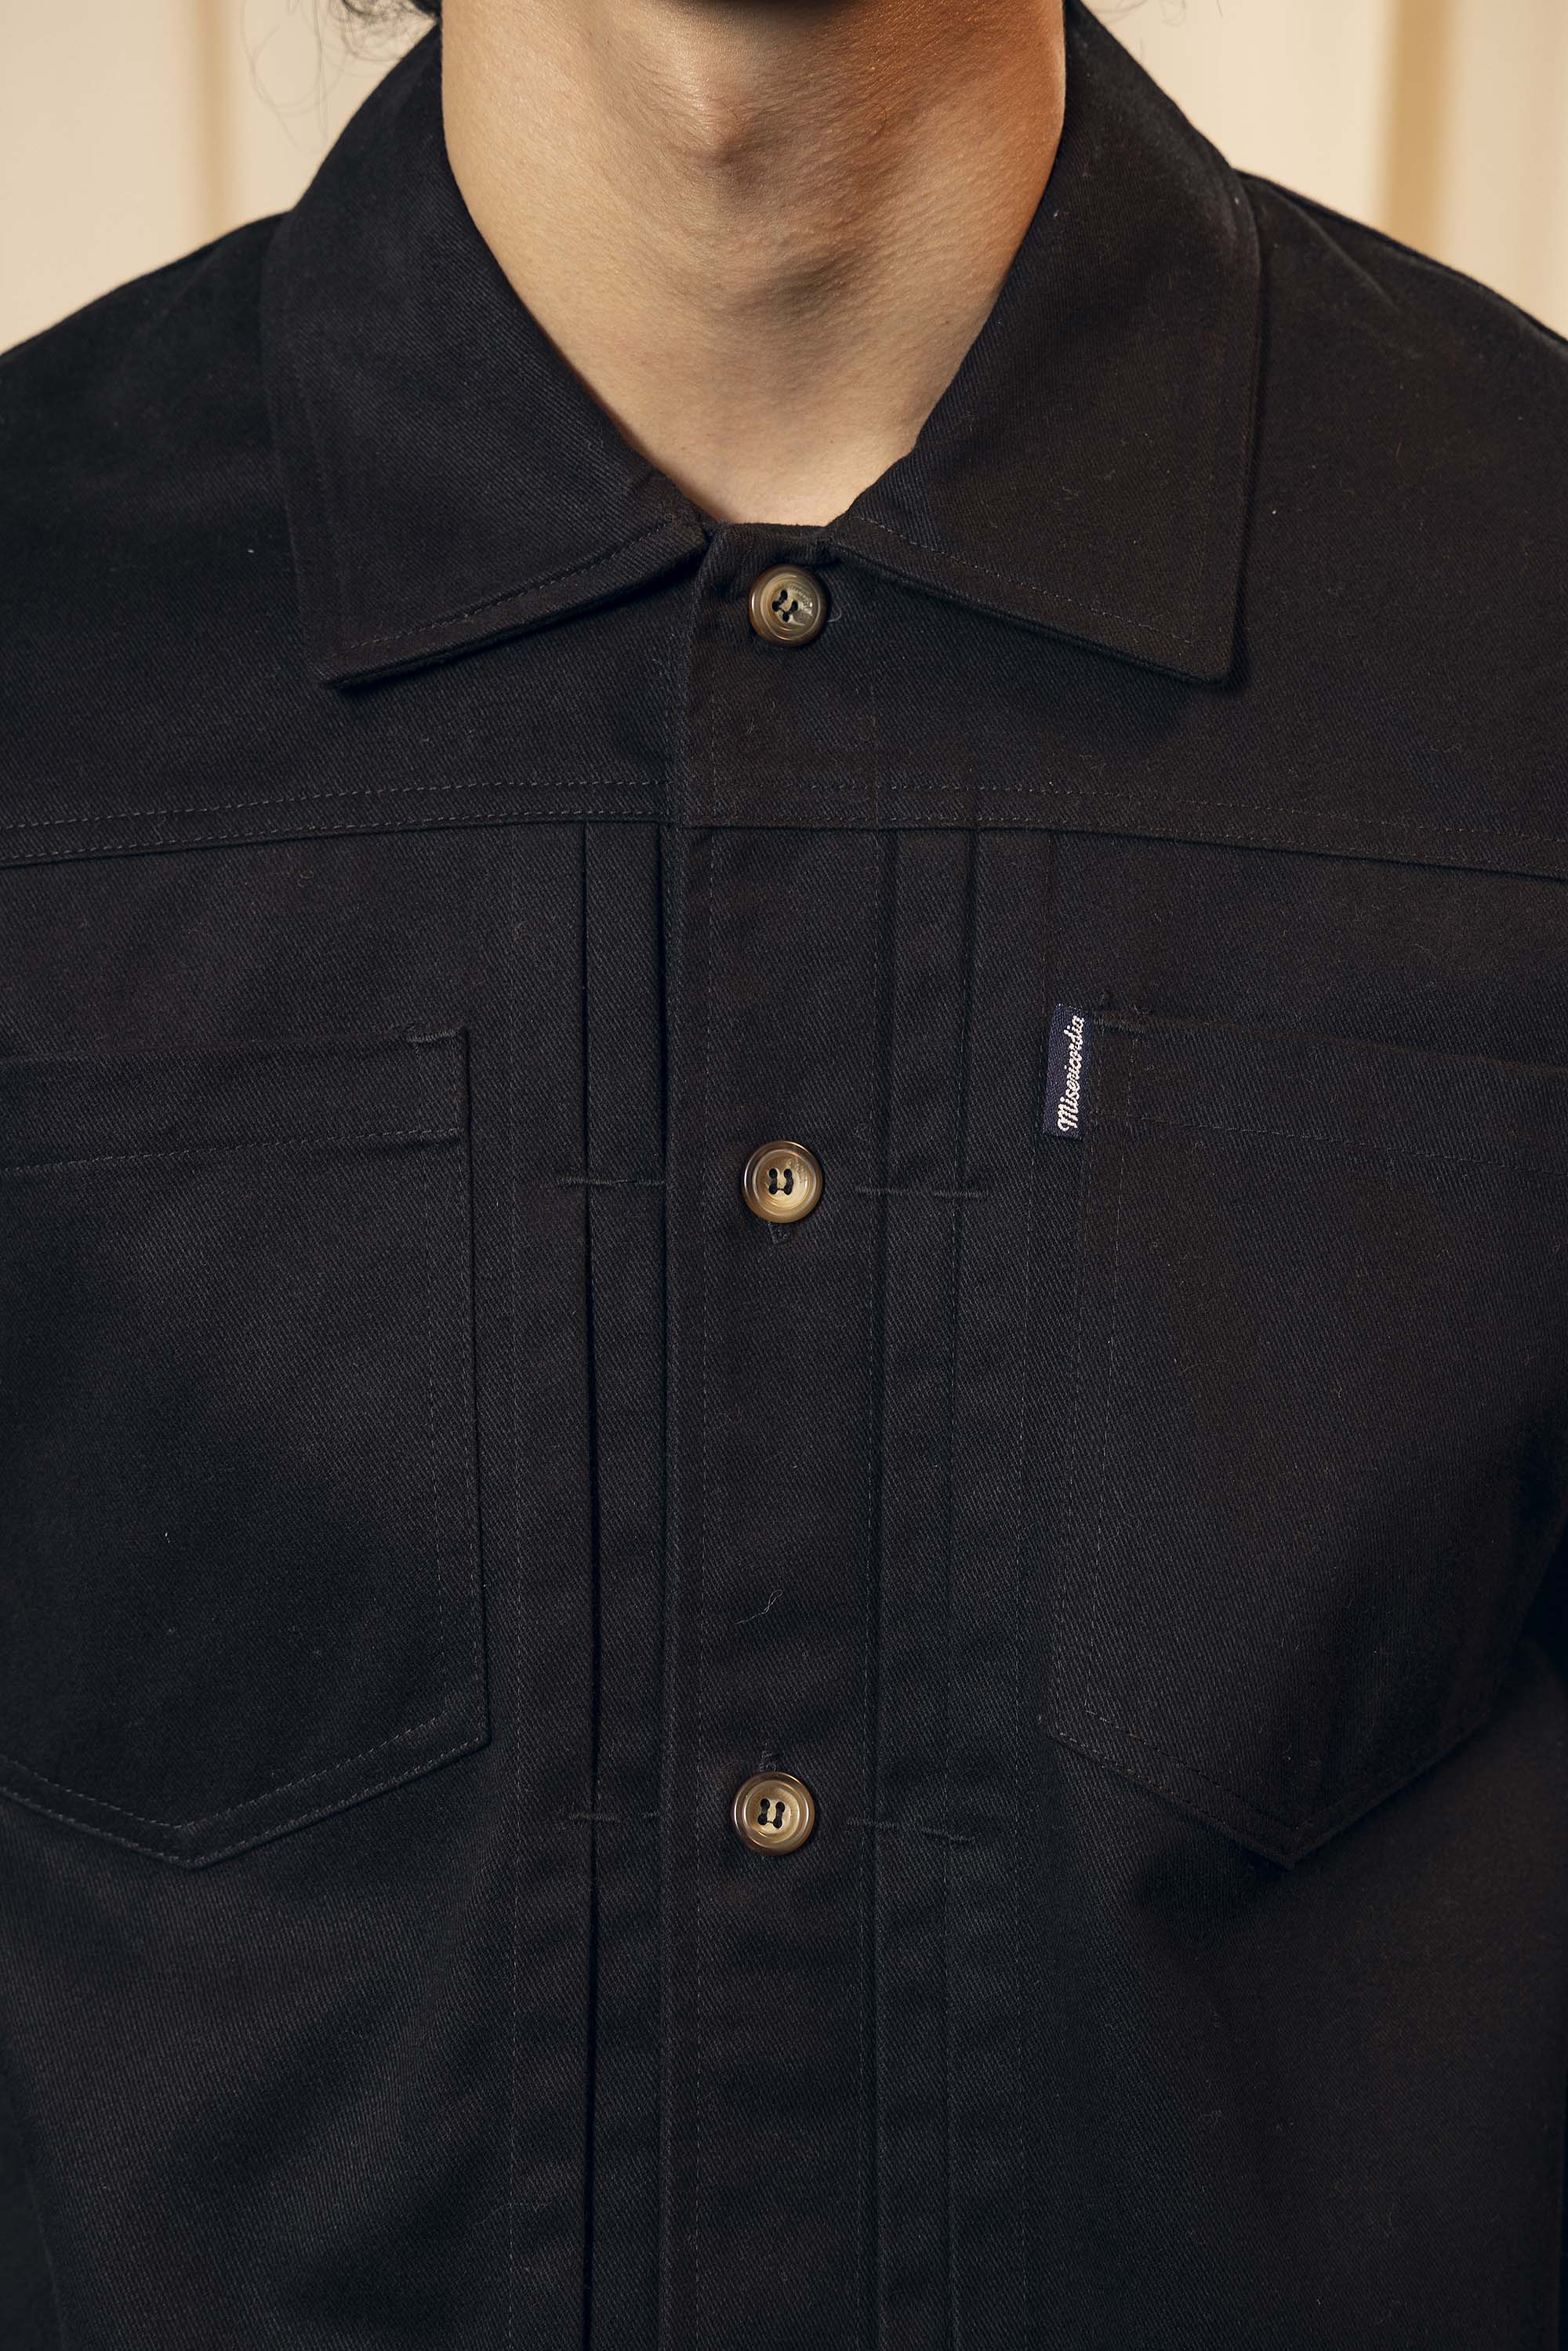 Chemise Wilfredo Noir chemise à l'esprit classique, simple et élégant